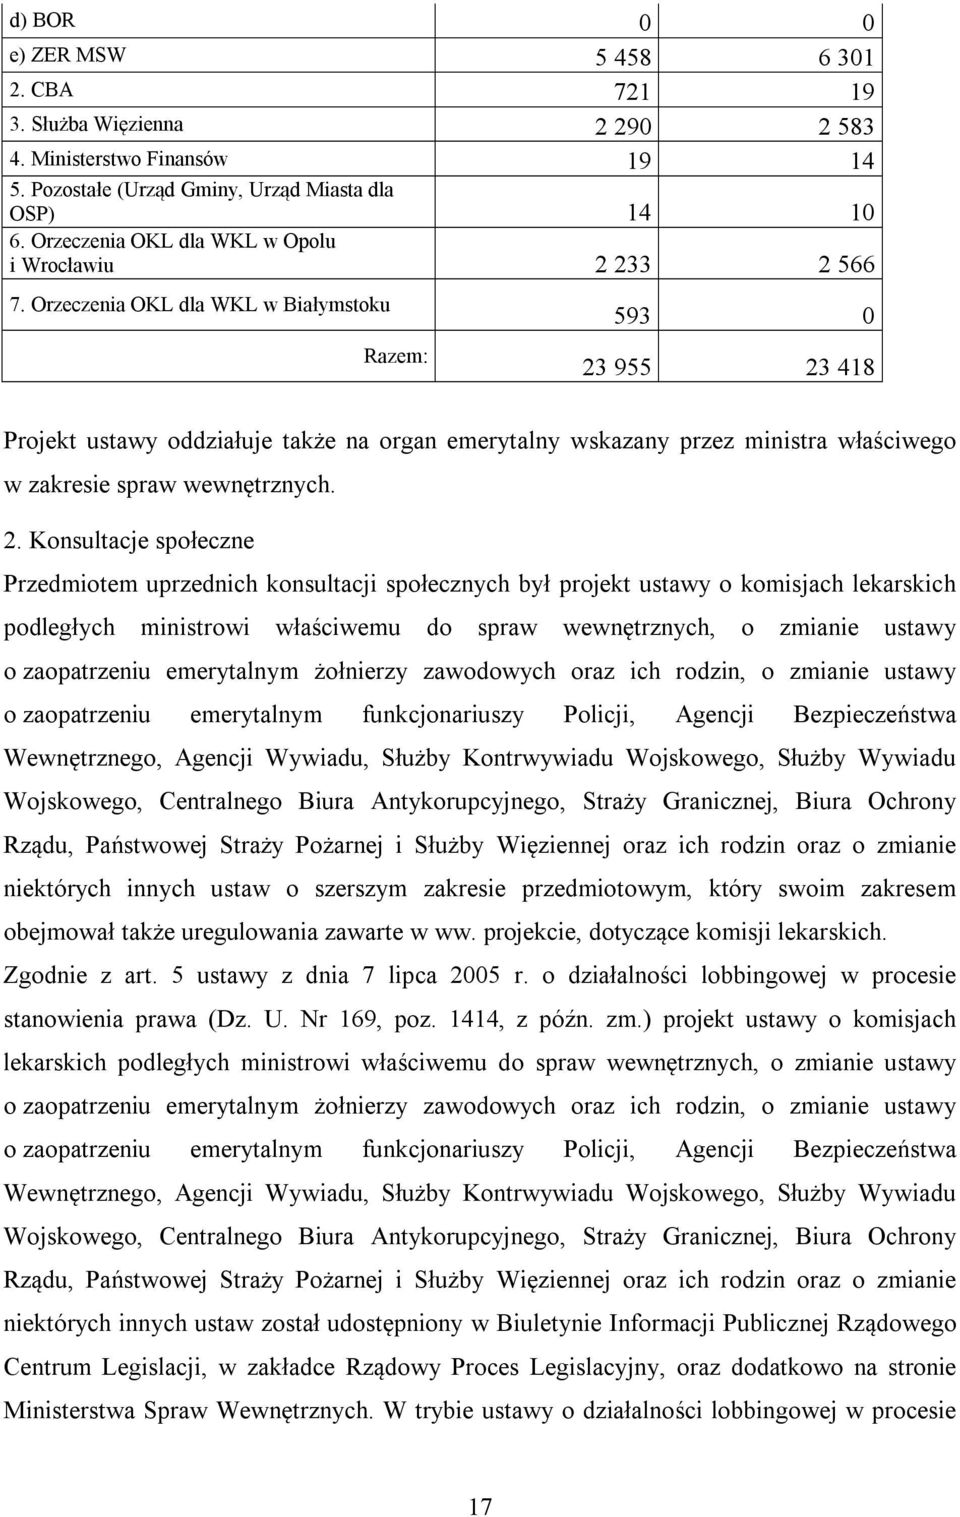 Orzeczenia OKL dla WKL w Białymstoku Razem: 593 0 23